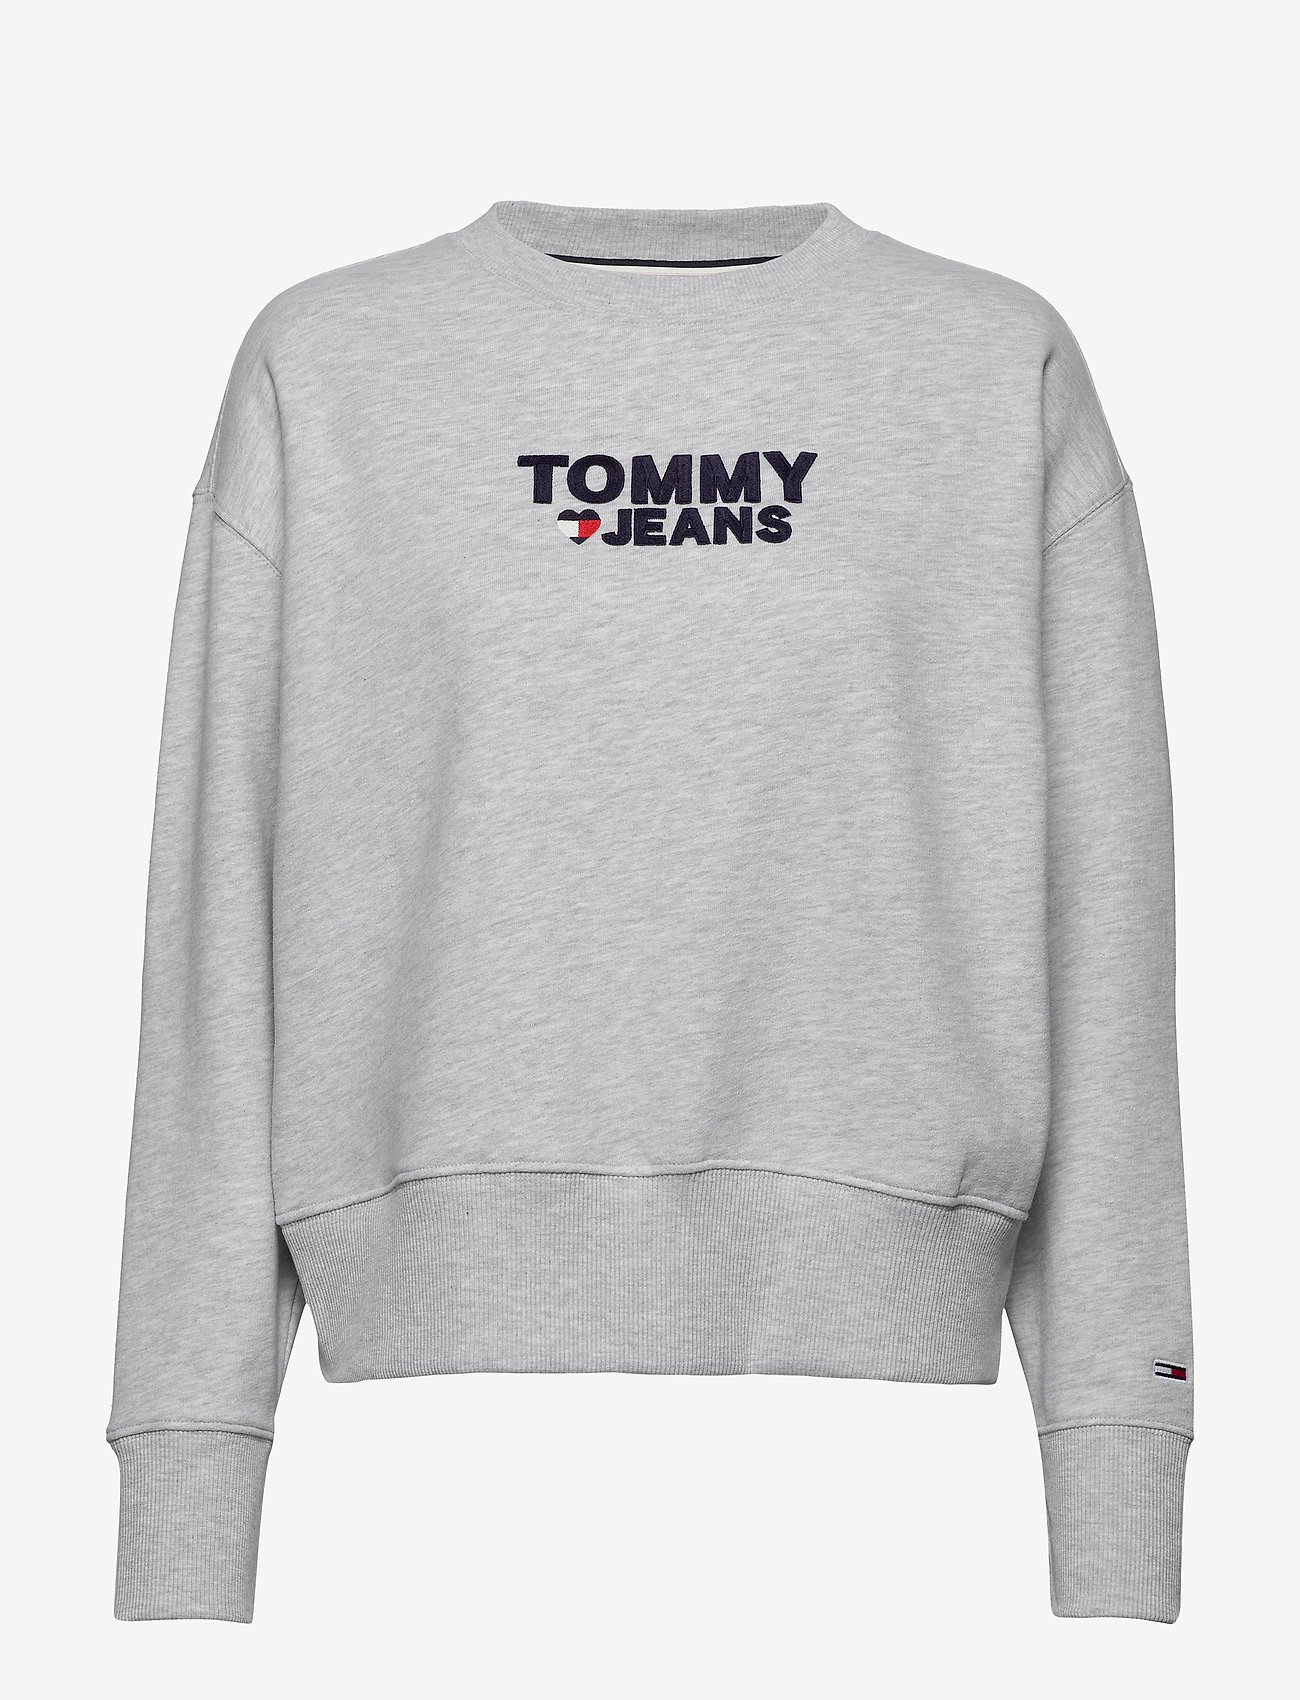 tommy jeans sweatshirt grey